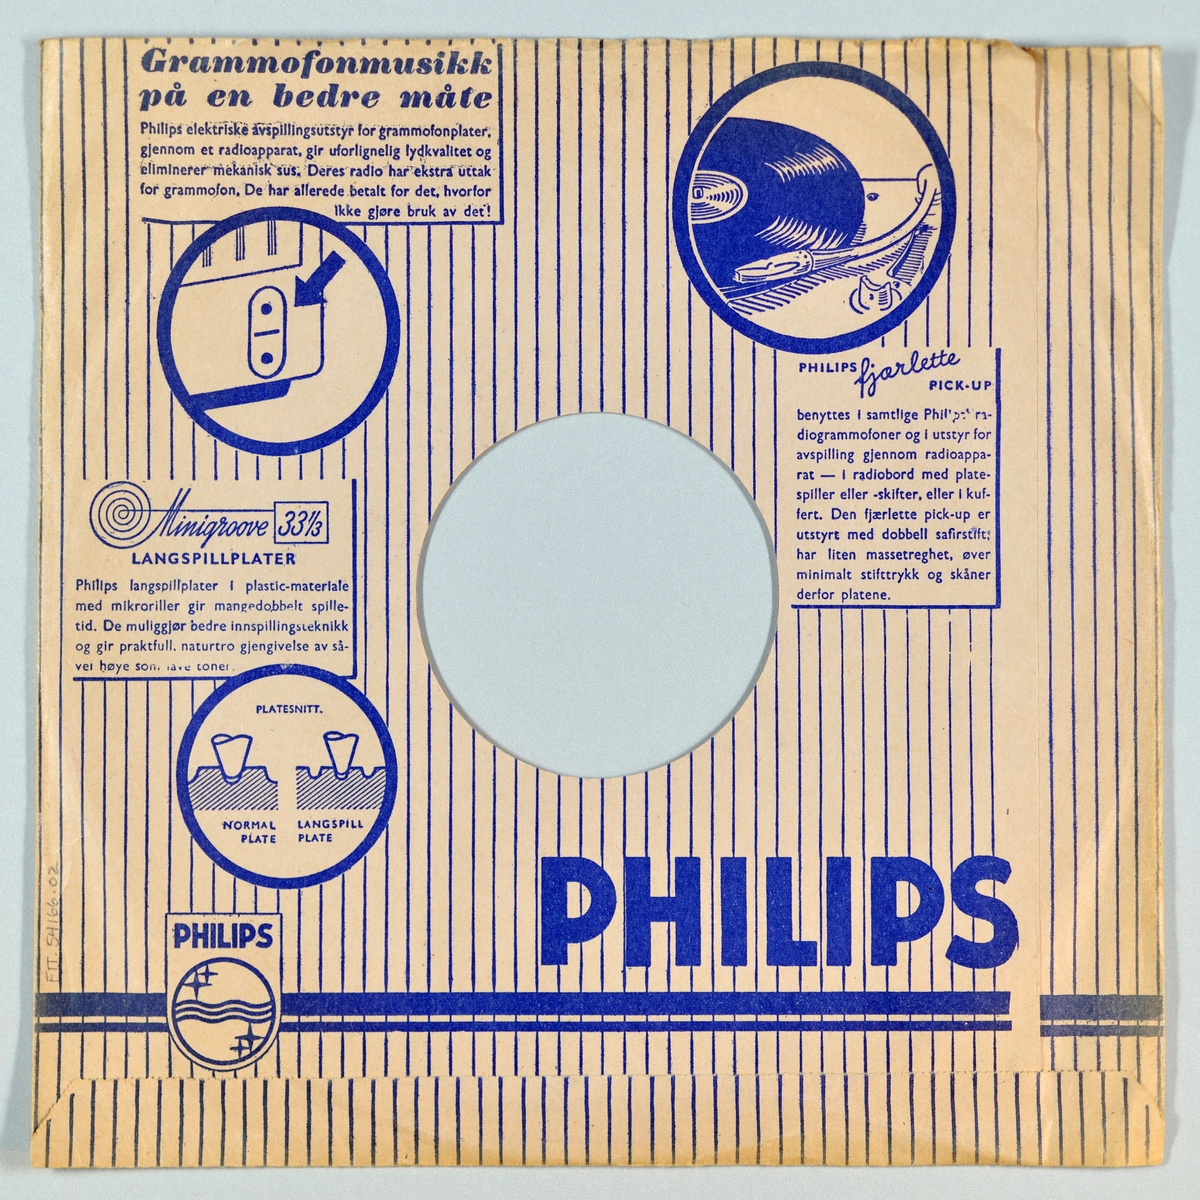 FTT.54166.01:
Svart grammofonplate laget av bakelitt og skjellak. Etiketten er blå med sølvskrift. Logoen til Philips er på etiketten

FTT.54166.02:
Plateomslag til platen laget av hvitt/beige papir med skrift/design i blått. Begge sidene har loddrette striper. På forsiden er logoen til Philips og over hele omslaget står det navn på ulike artister gitt ut på Philips. På baksiden er det små informasjonsbokser om grammofonmusikk, langspilleplater, Philips fjærlette pick-up og et bilde som viser forskjellen på en normal plate og en langspillplate.